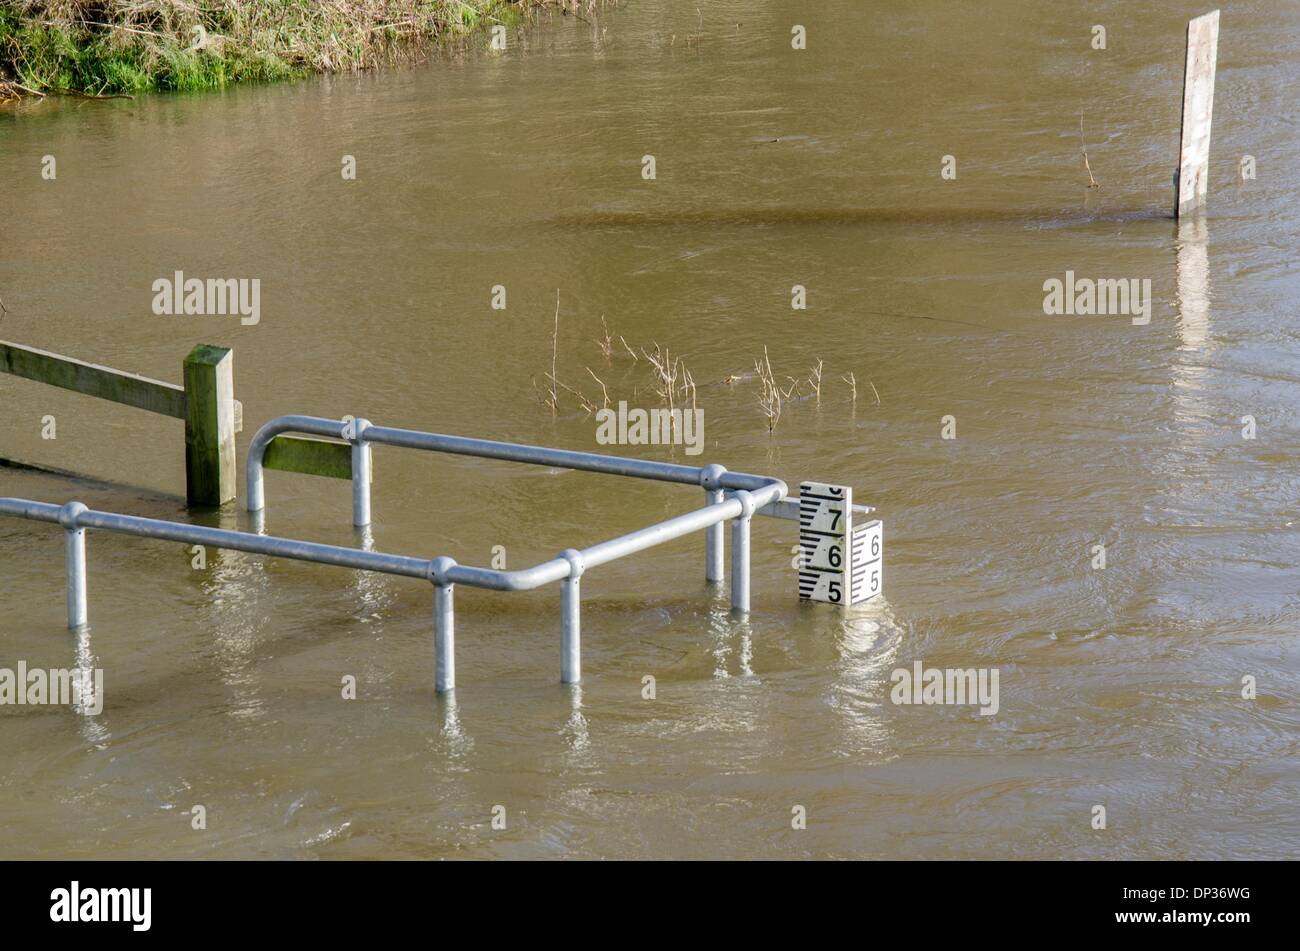 Jauge de profondeur de l'eau de la rivière par le pont d'Iford Home Park, Bournemouth, Dorset, UK. Montrant la profondeur sur 7 Janvier 2014. de l'eau au pont d'Iford Accueil Stour Park près de Bournemouth, où tous les 90 résidents ont été forcés de se déplacer vers l'extérieur. Crédit : Mike/McEnnerney Alamy Live News Banque D'Images